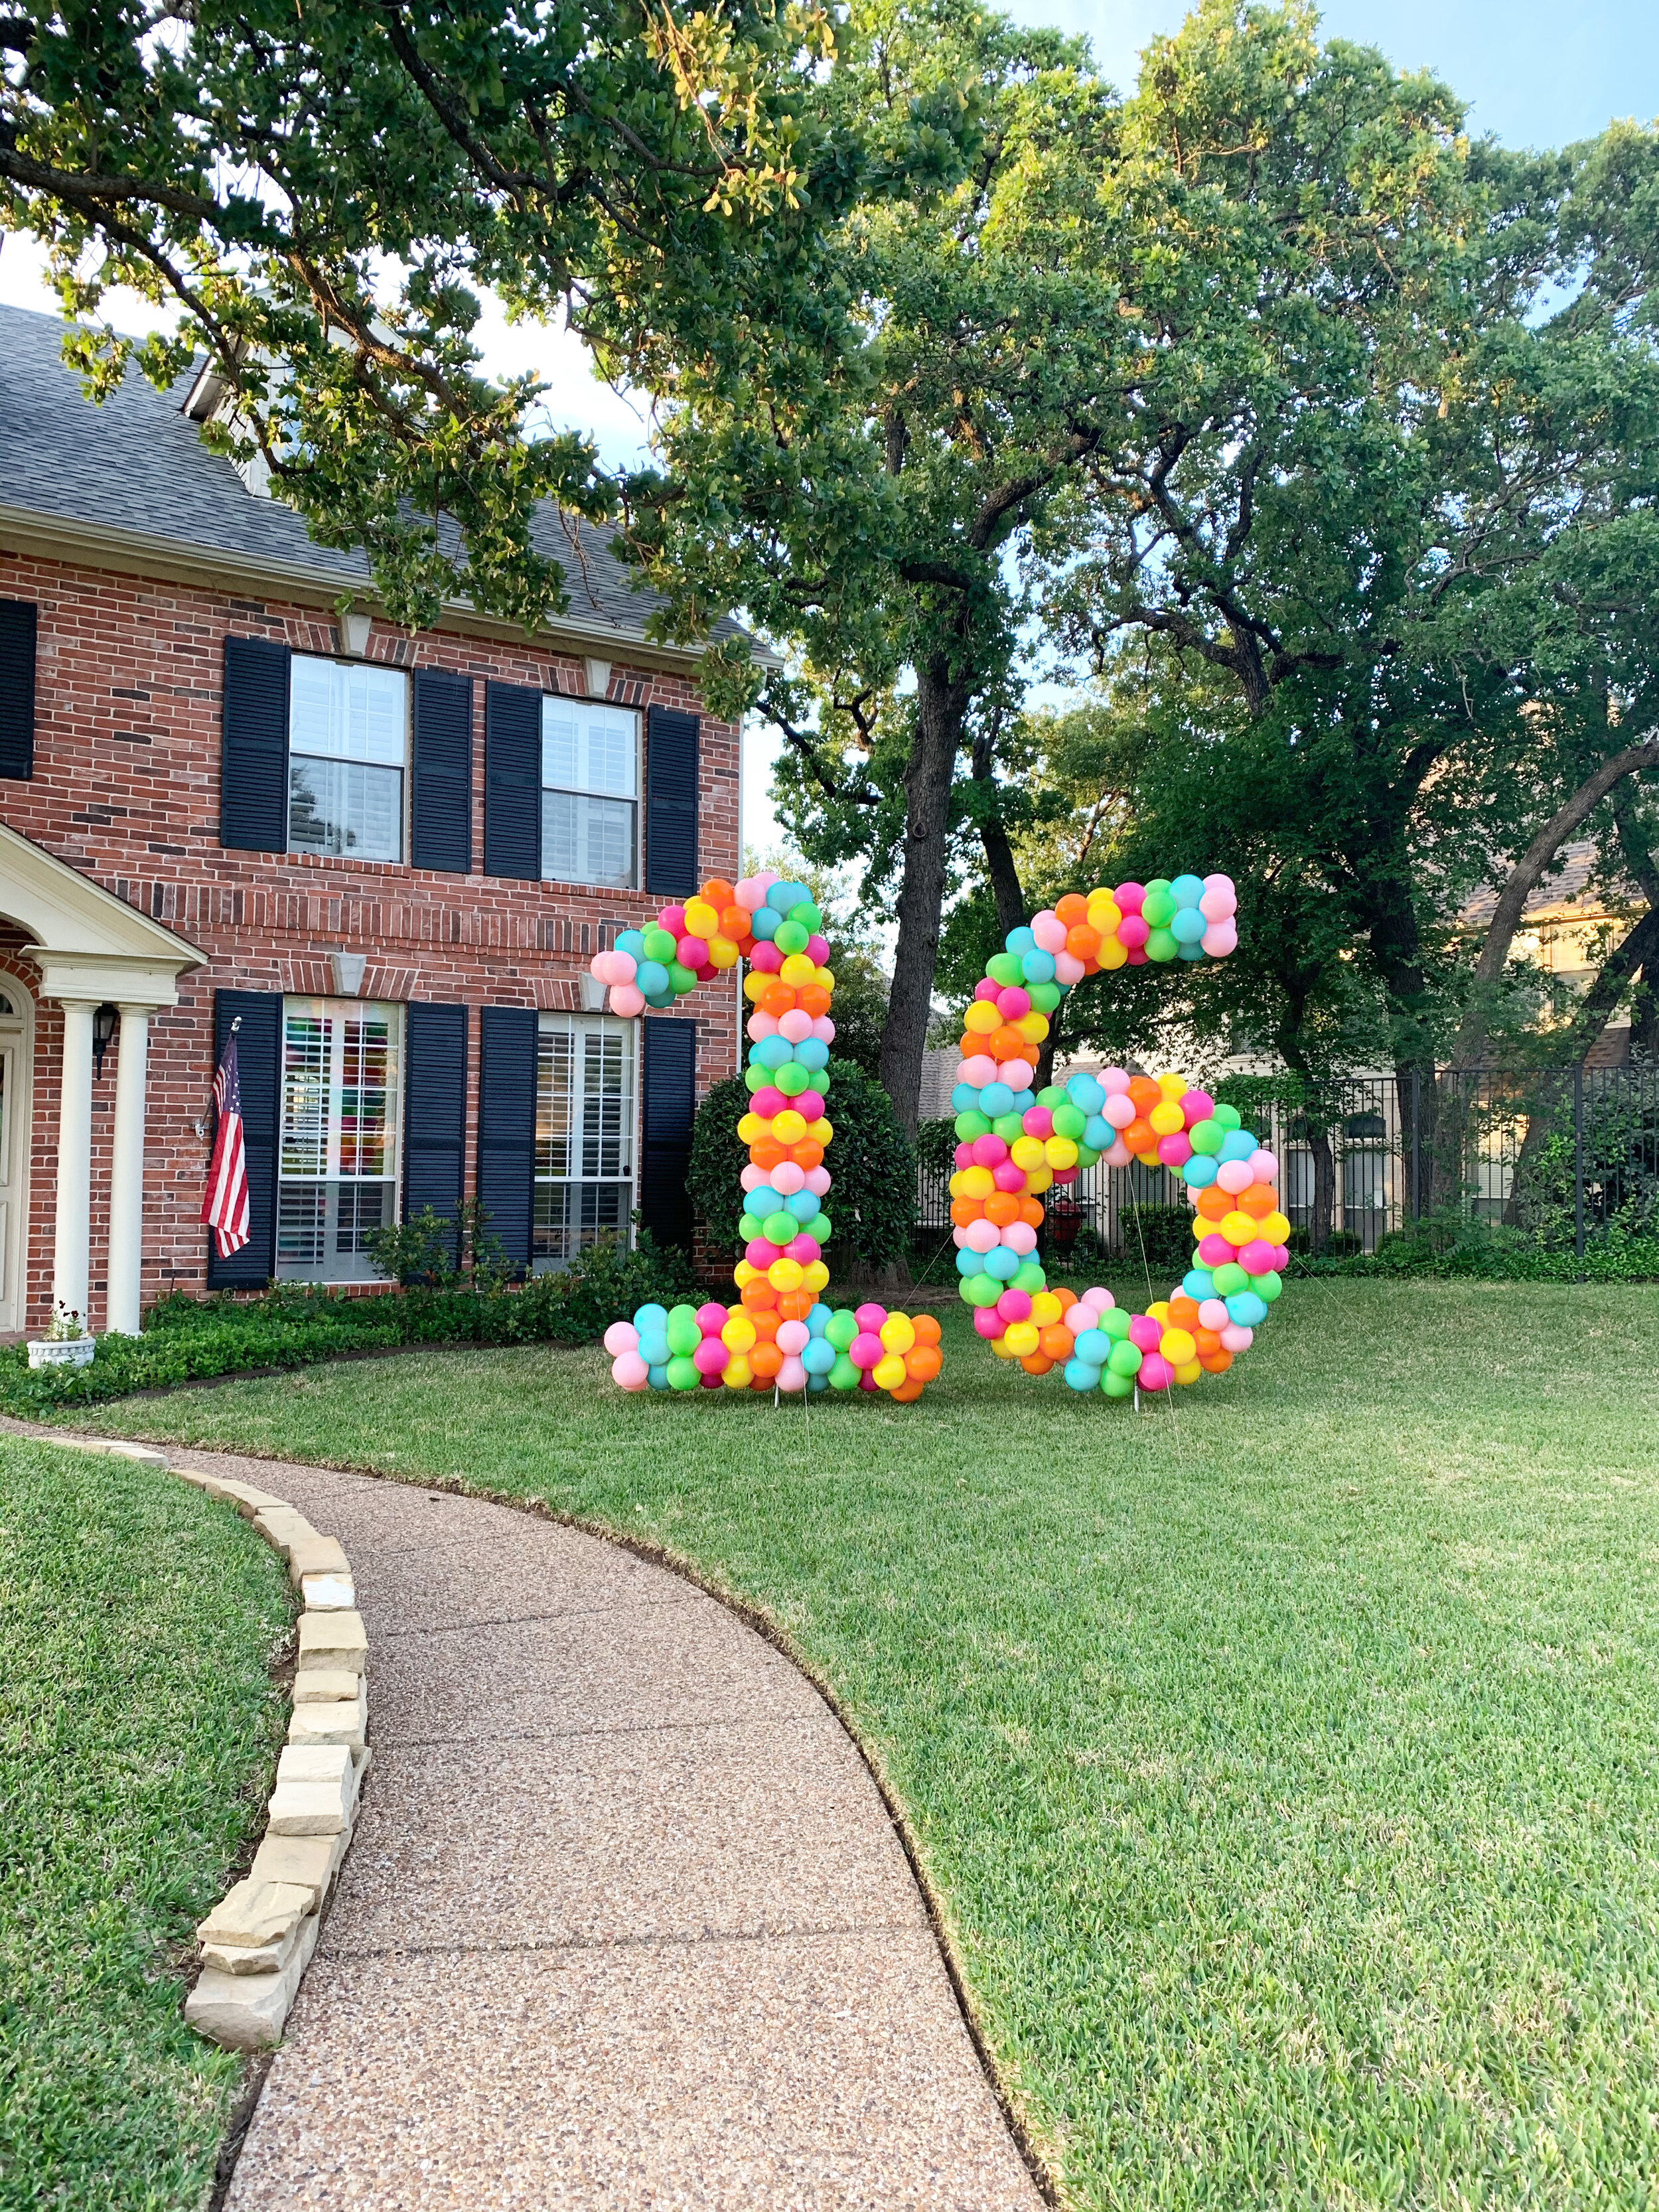  Large Balloon yard number 16 